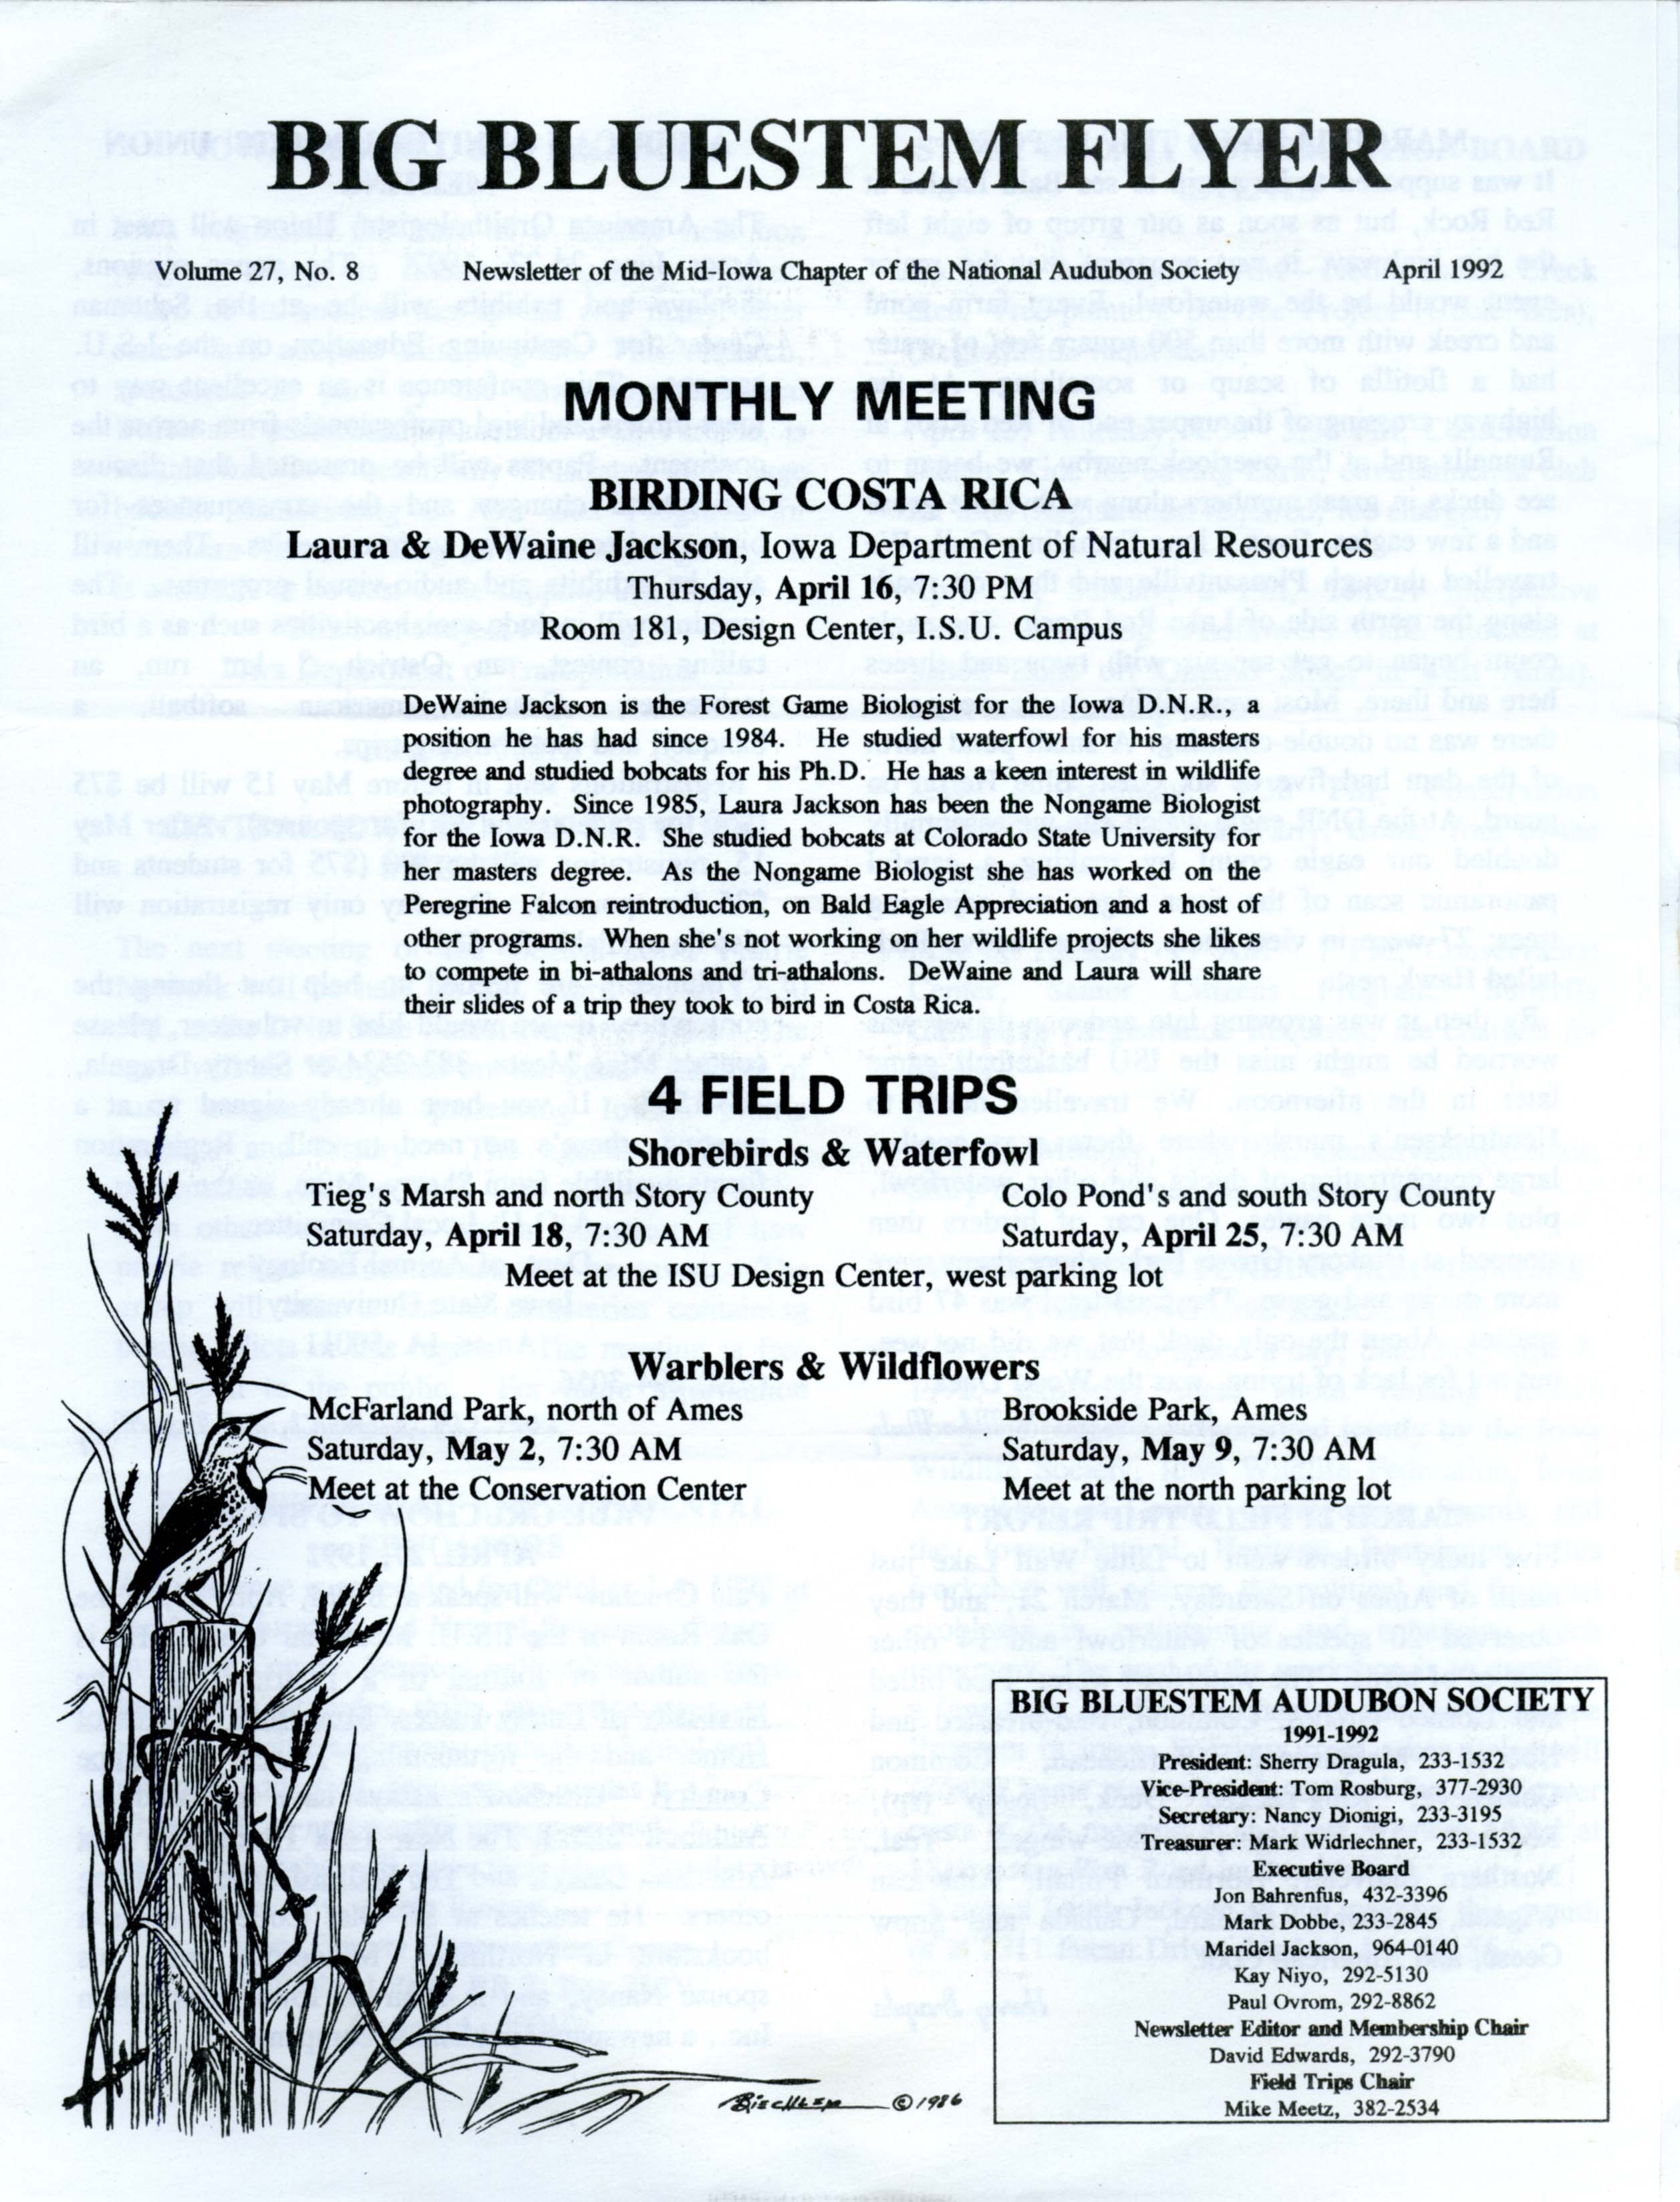 Big Bluestem Flyer, Volume 27, Number 8, April 1992